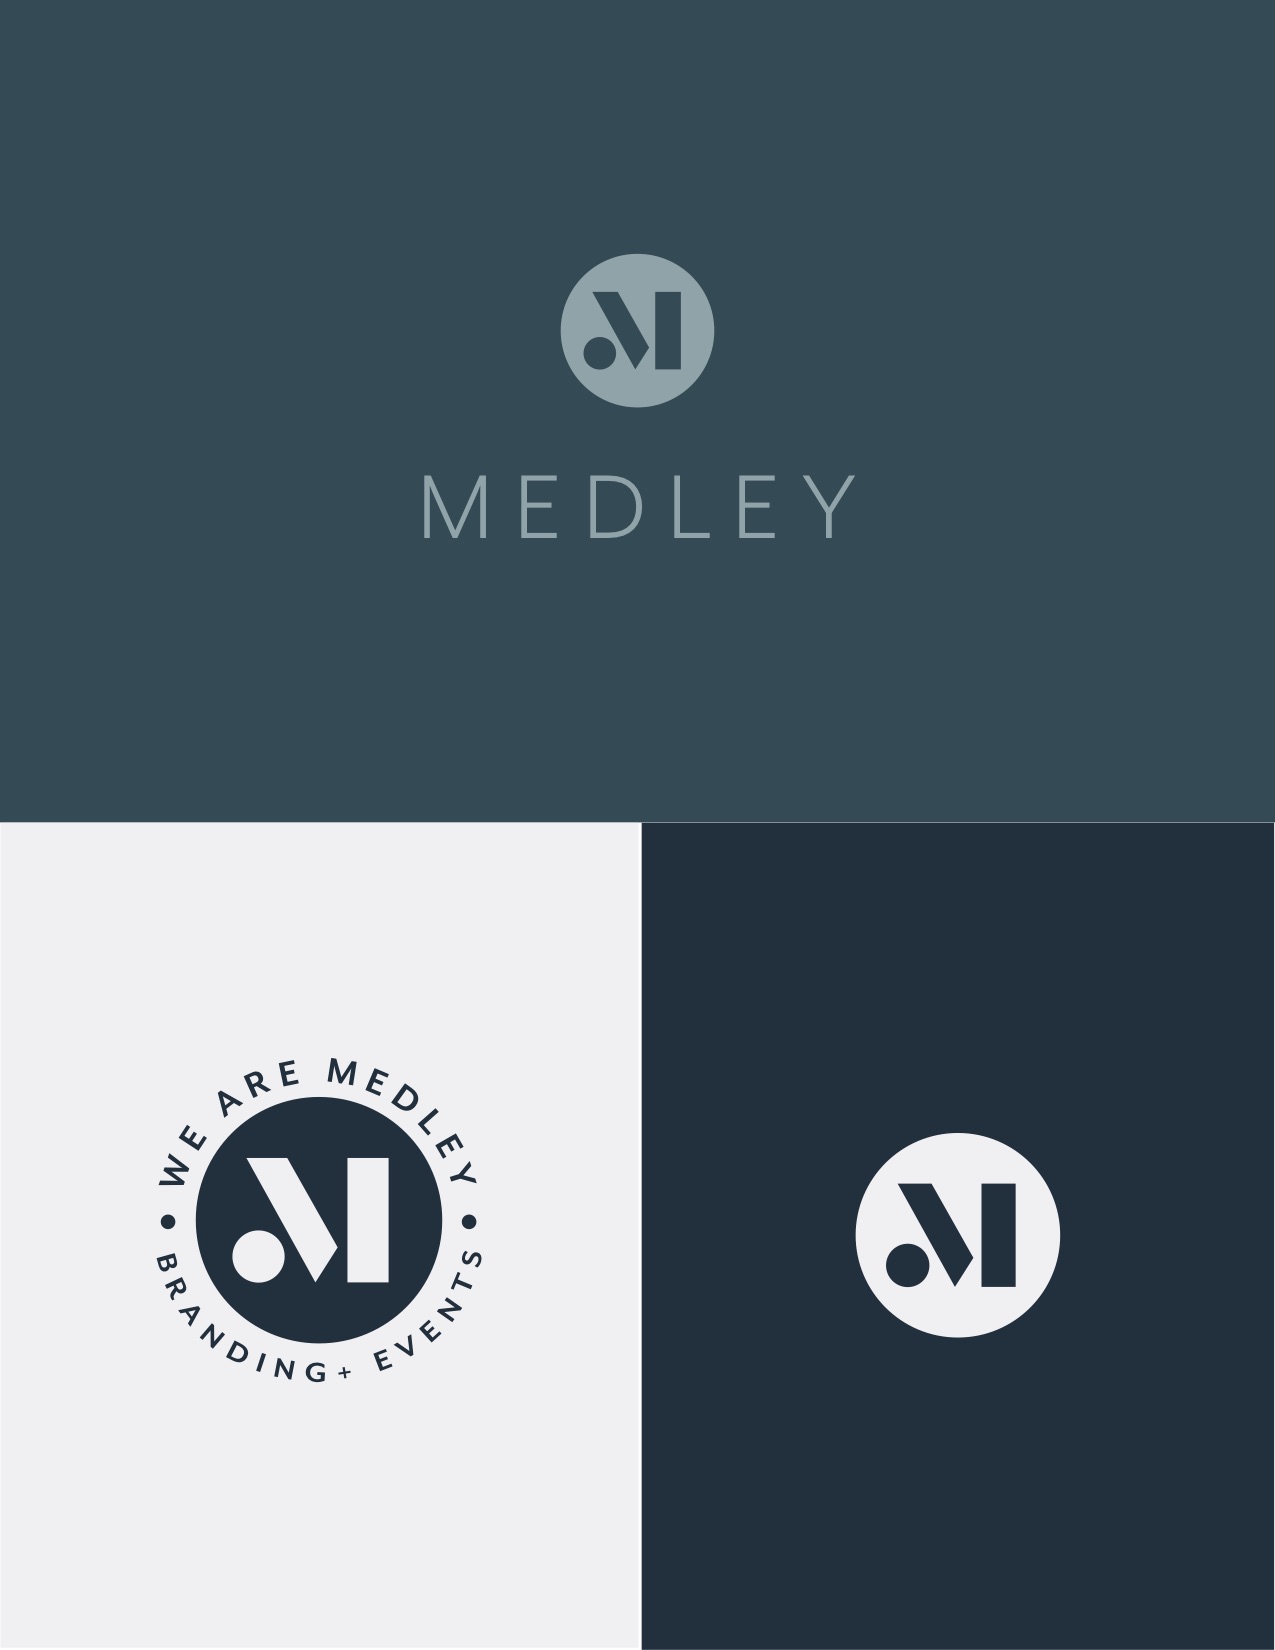 Medley_logos_v3 1.jpg